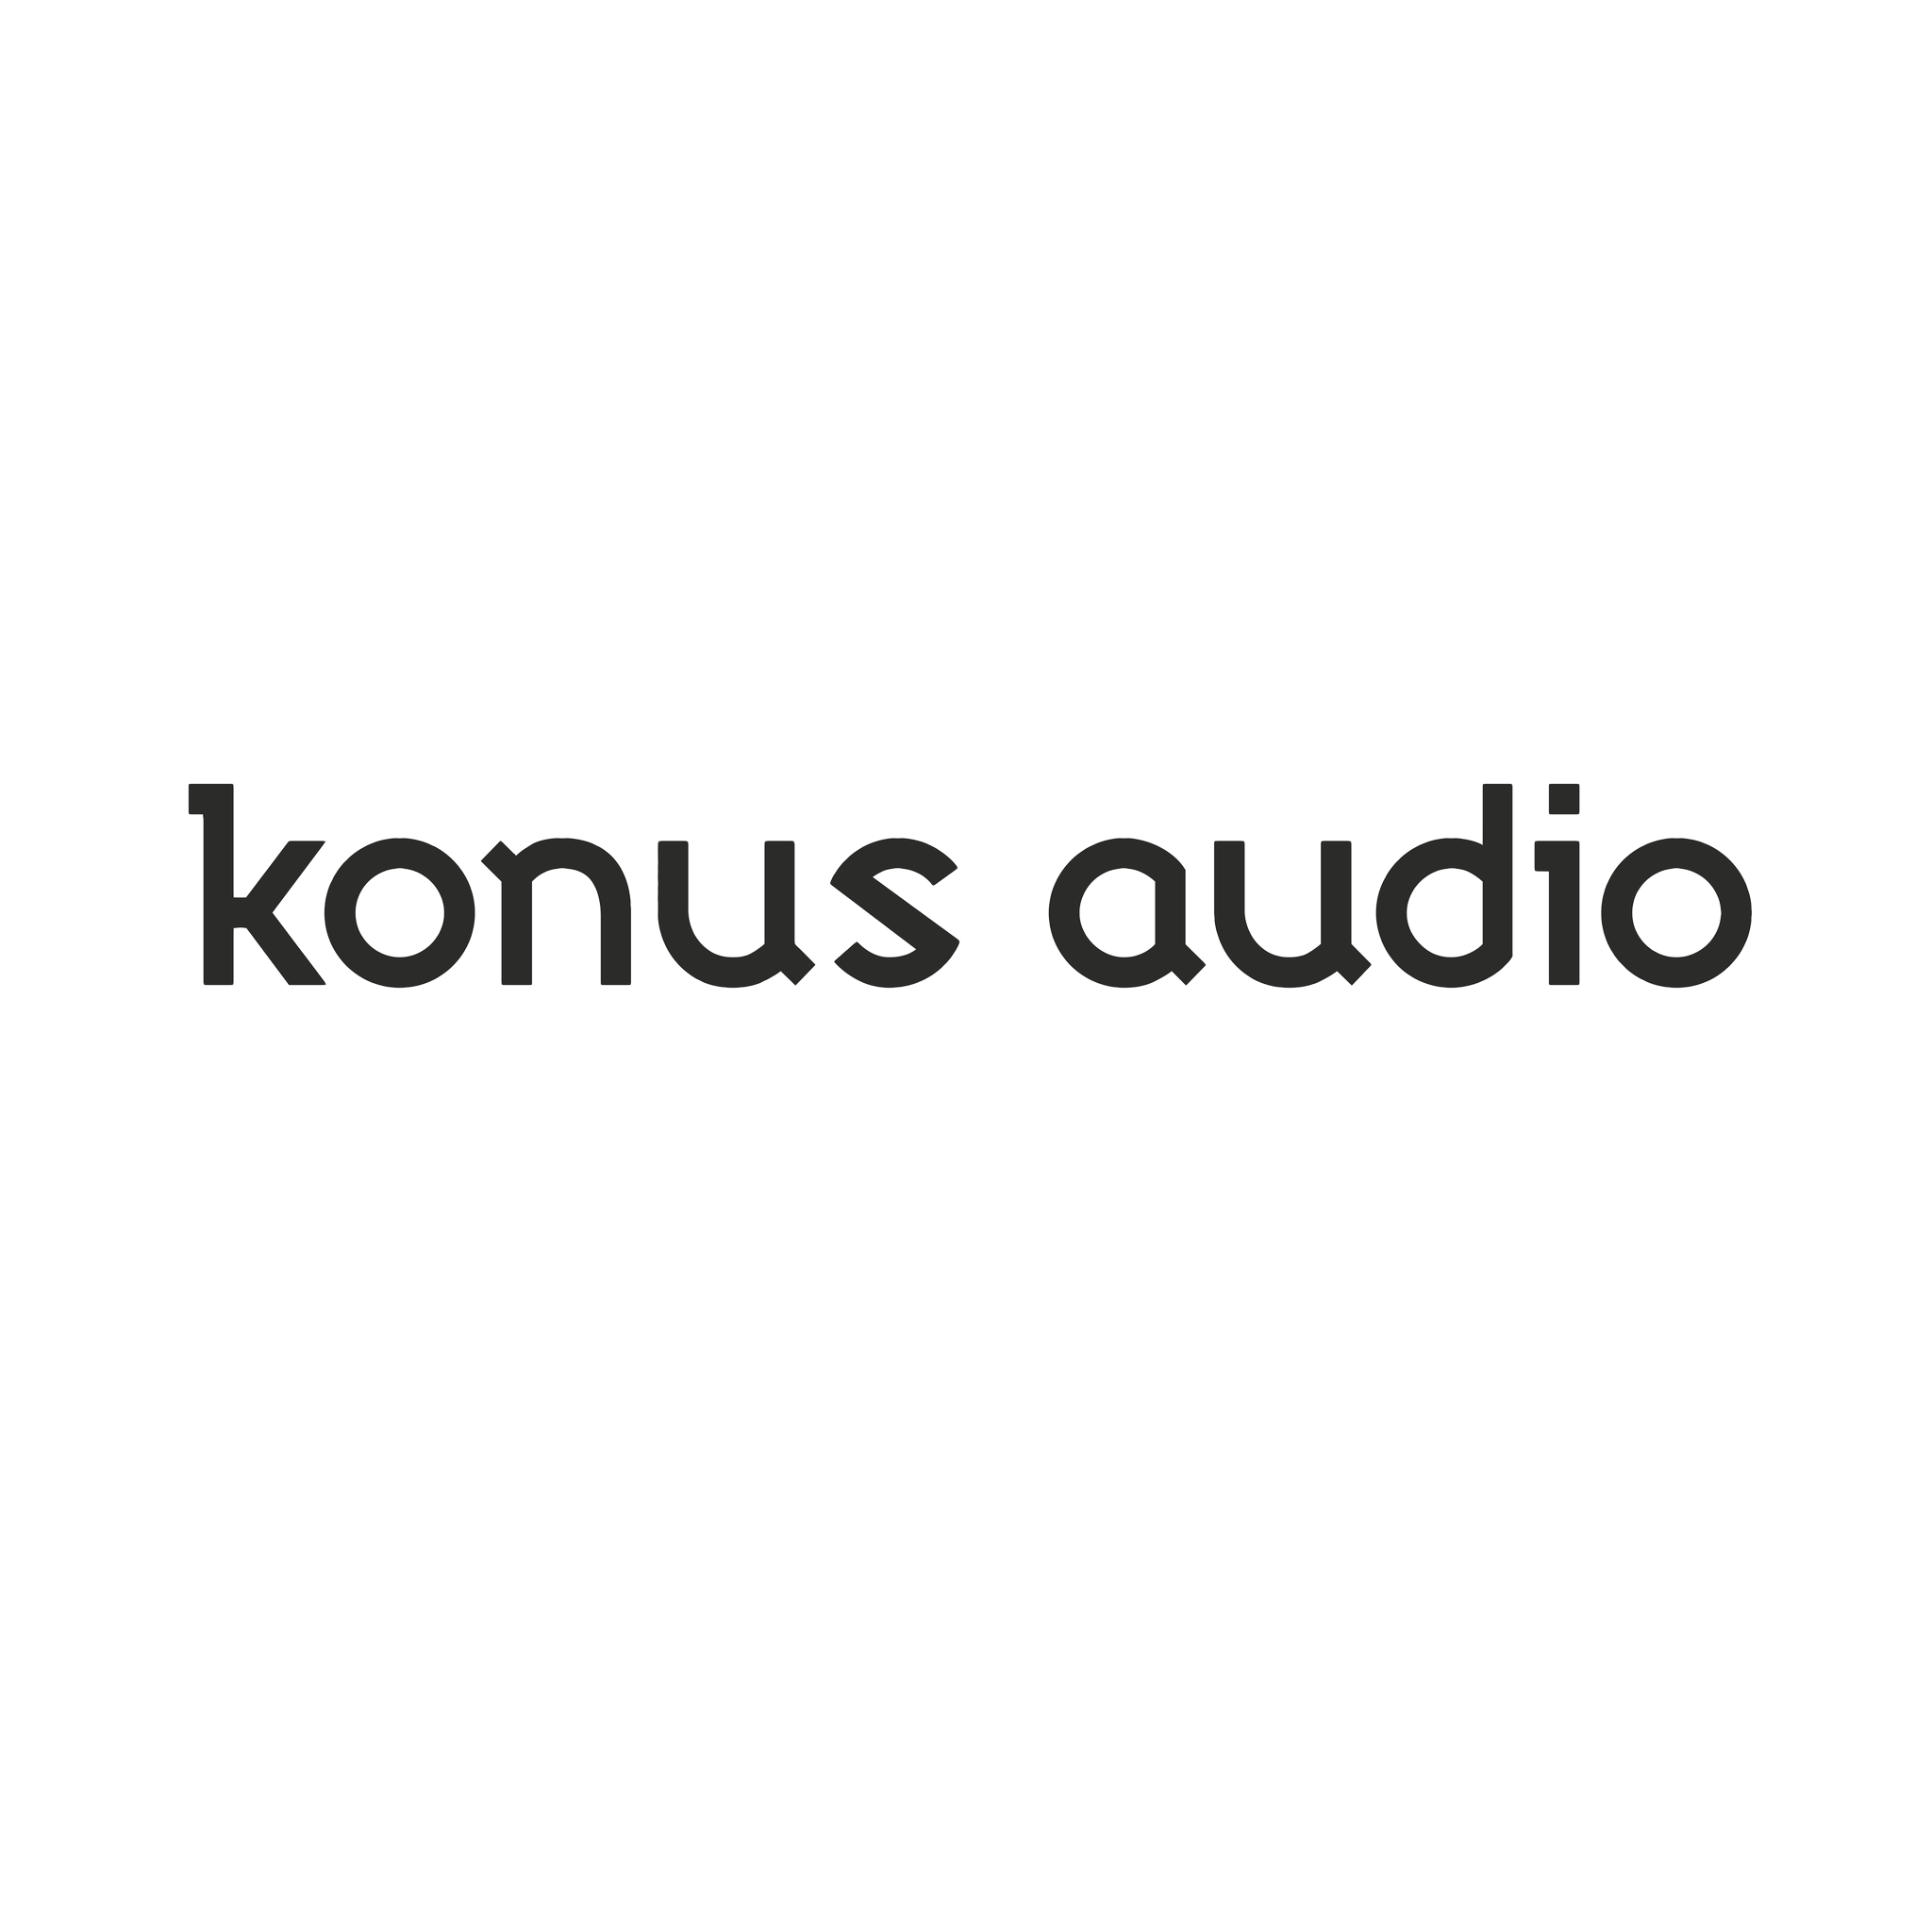 konus audio logo